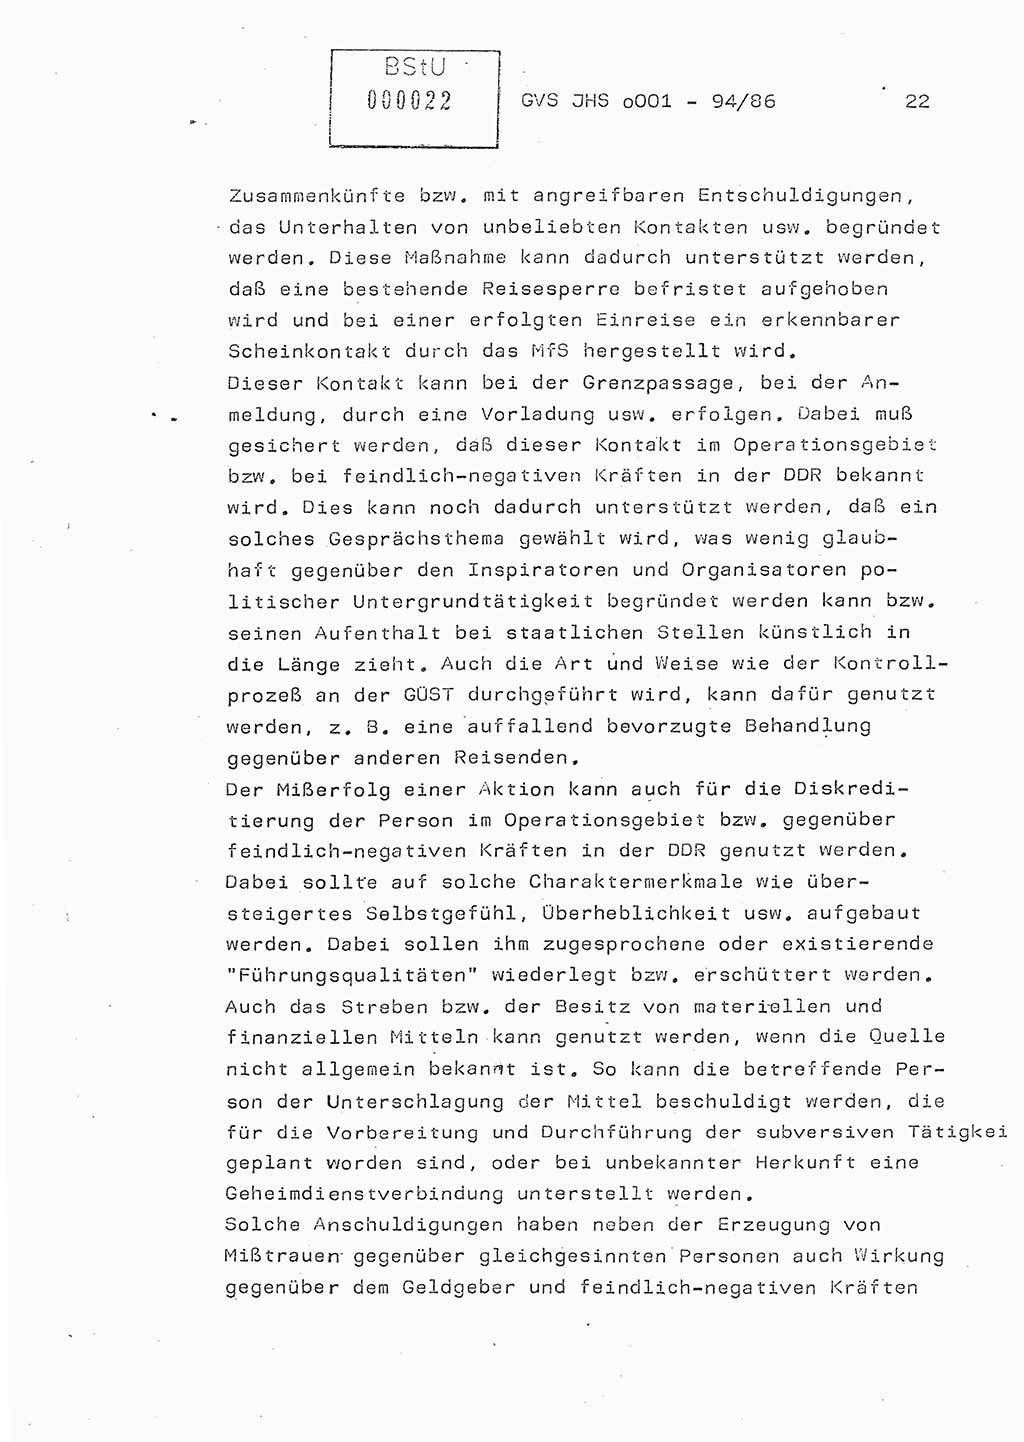 Diplomarbeit Oberleutnant Volkmar Pechmann (HA ⅩⅩ/5), Ministerium für Staatssicherheit (MfS) [Deutsche Demokratische Republik (DDR)], Juristische Hochschule (JHS), Geheime Verschlußsache (GVS) o001-94/86, Potsdam 1986, Blatt 22 (Dipl.-Arb. MfS DDR JHS GVS o001-94/86 1986, Bl. 22)